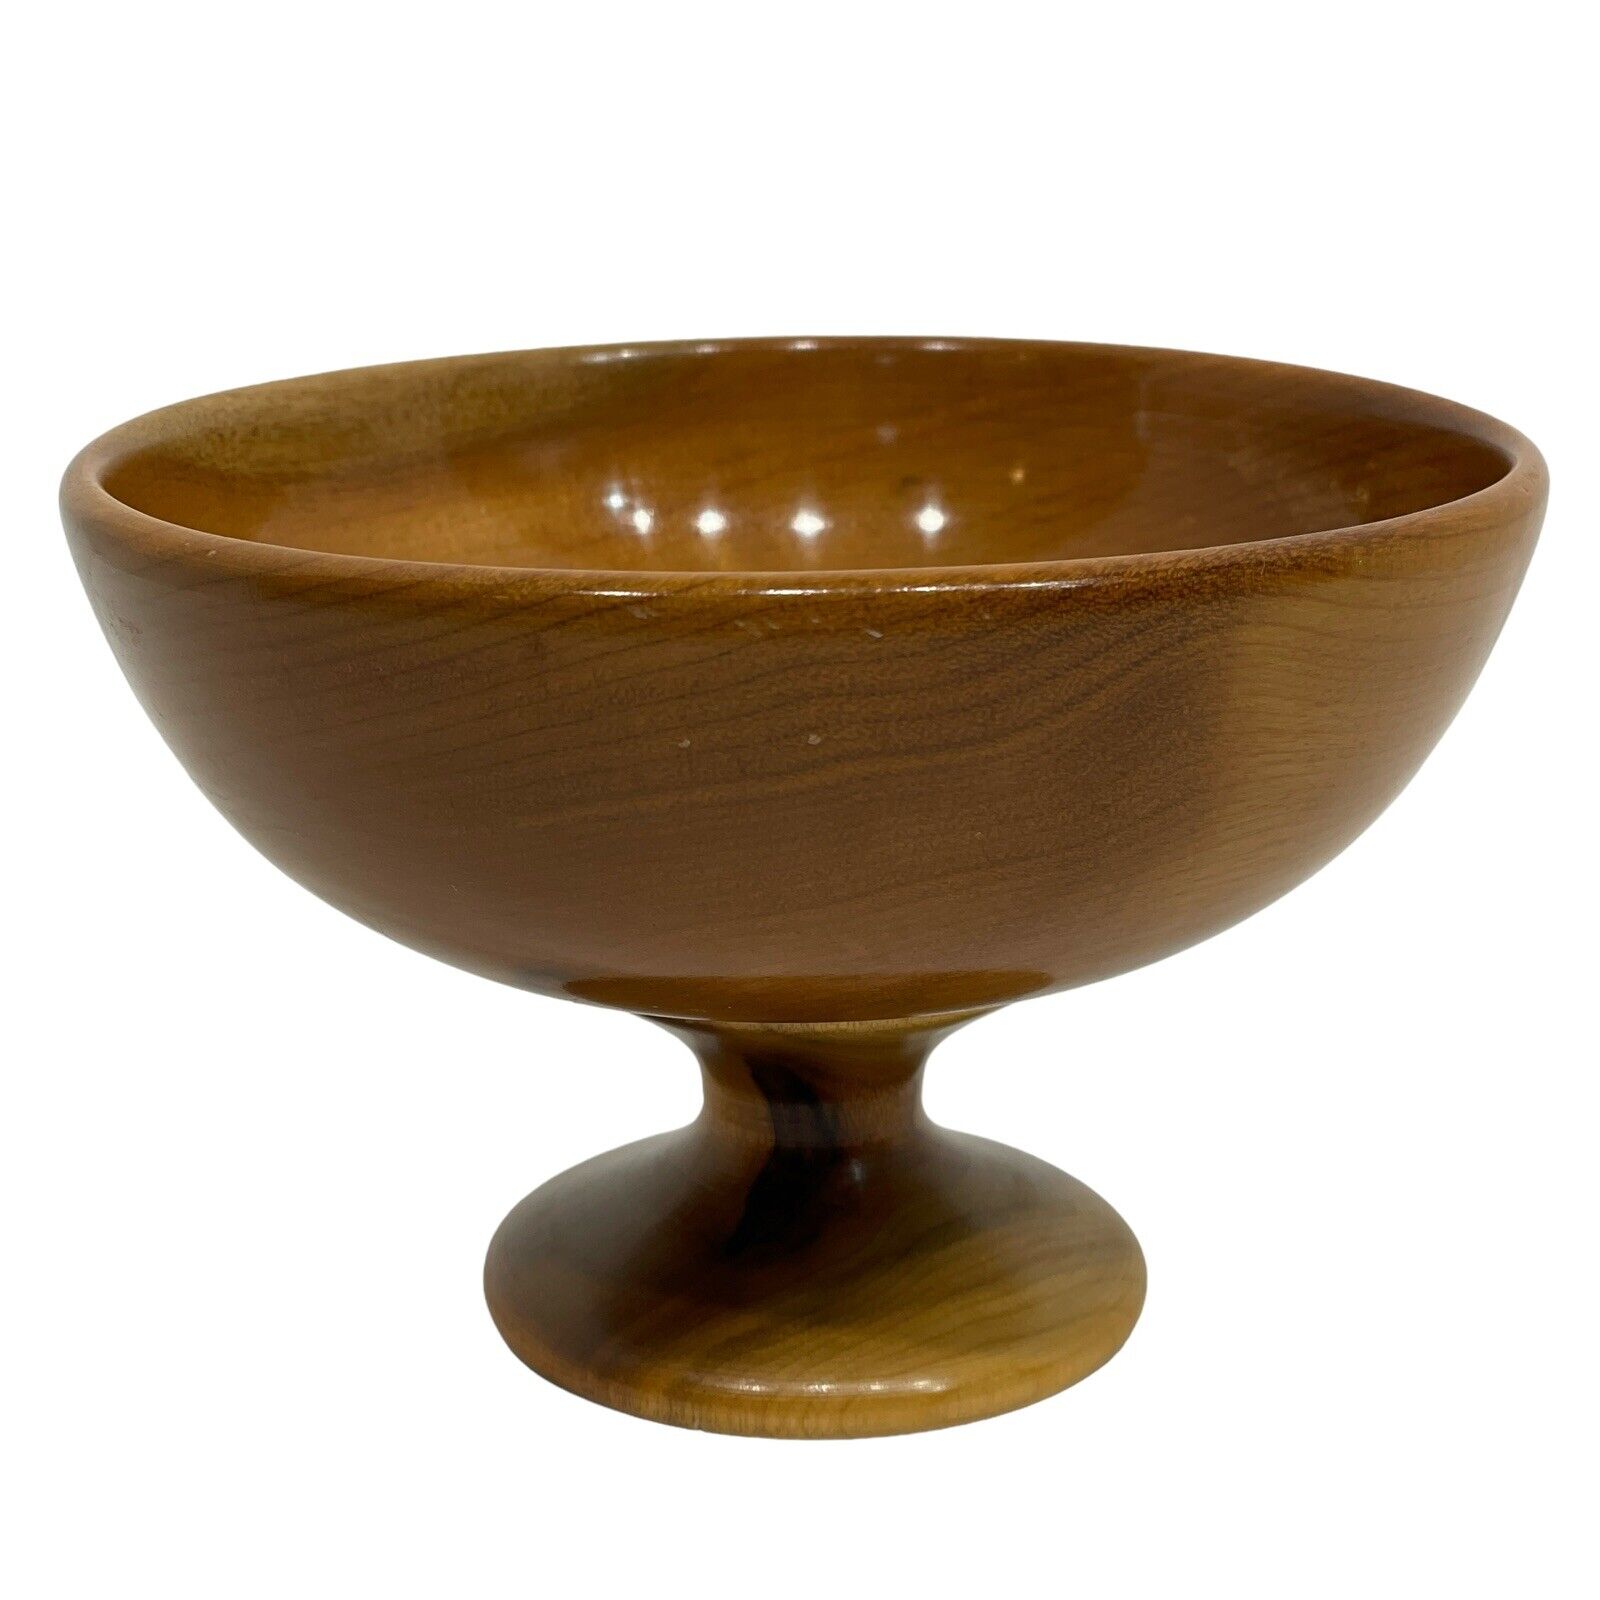 Vtg Myrtlewood Pedestal Bowl Dish 5.75”x 4” Ralph Bailey & Co Bend Oregon MCM